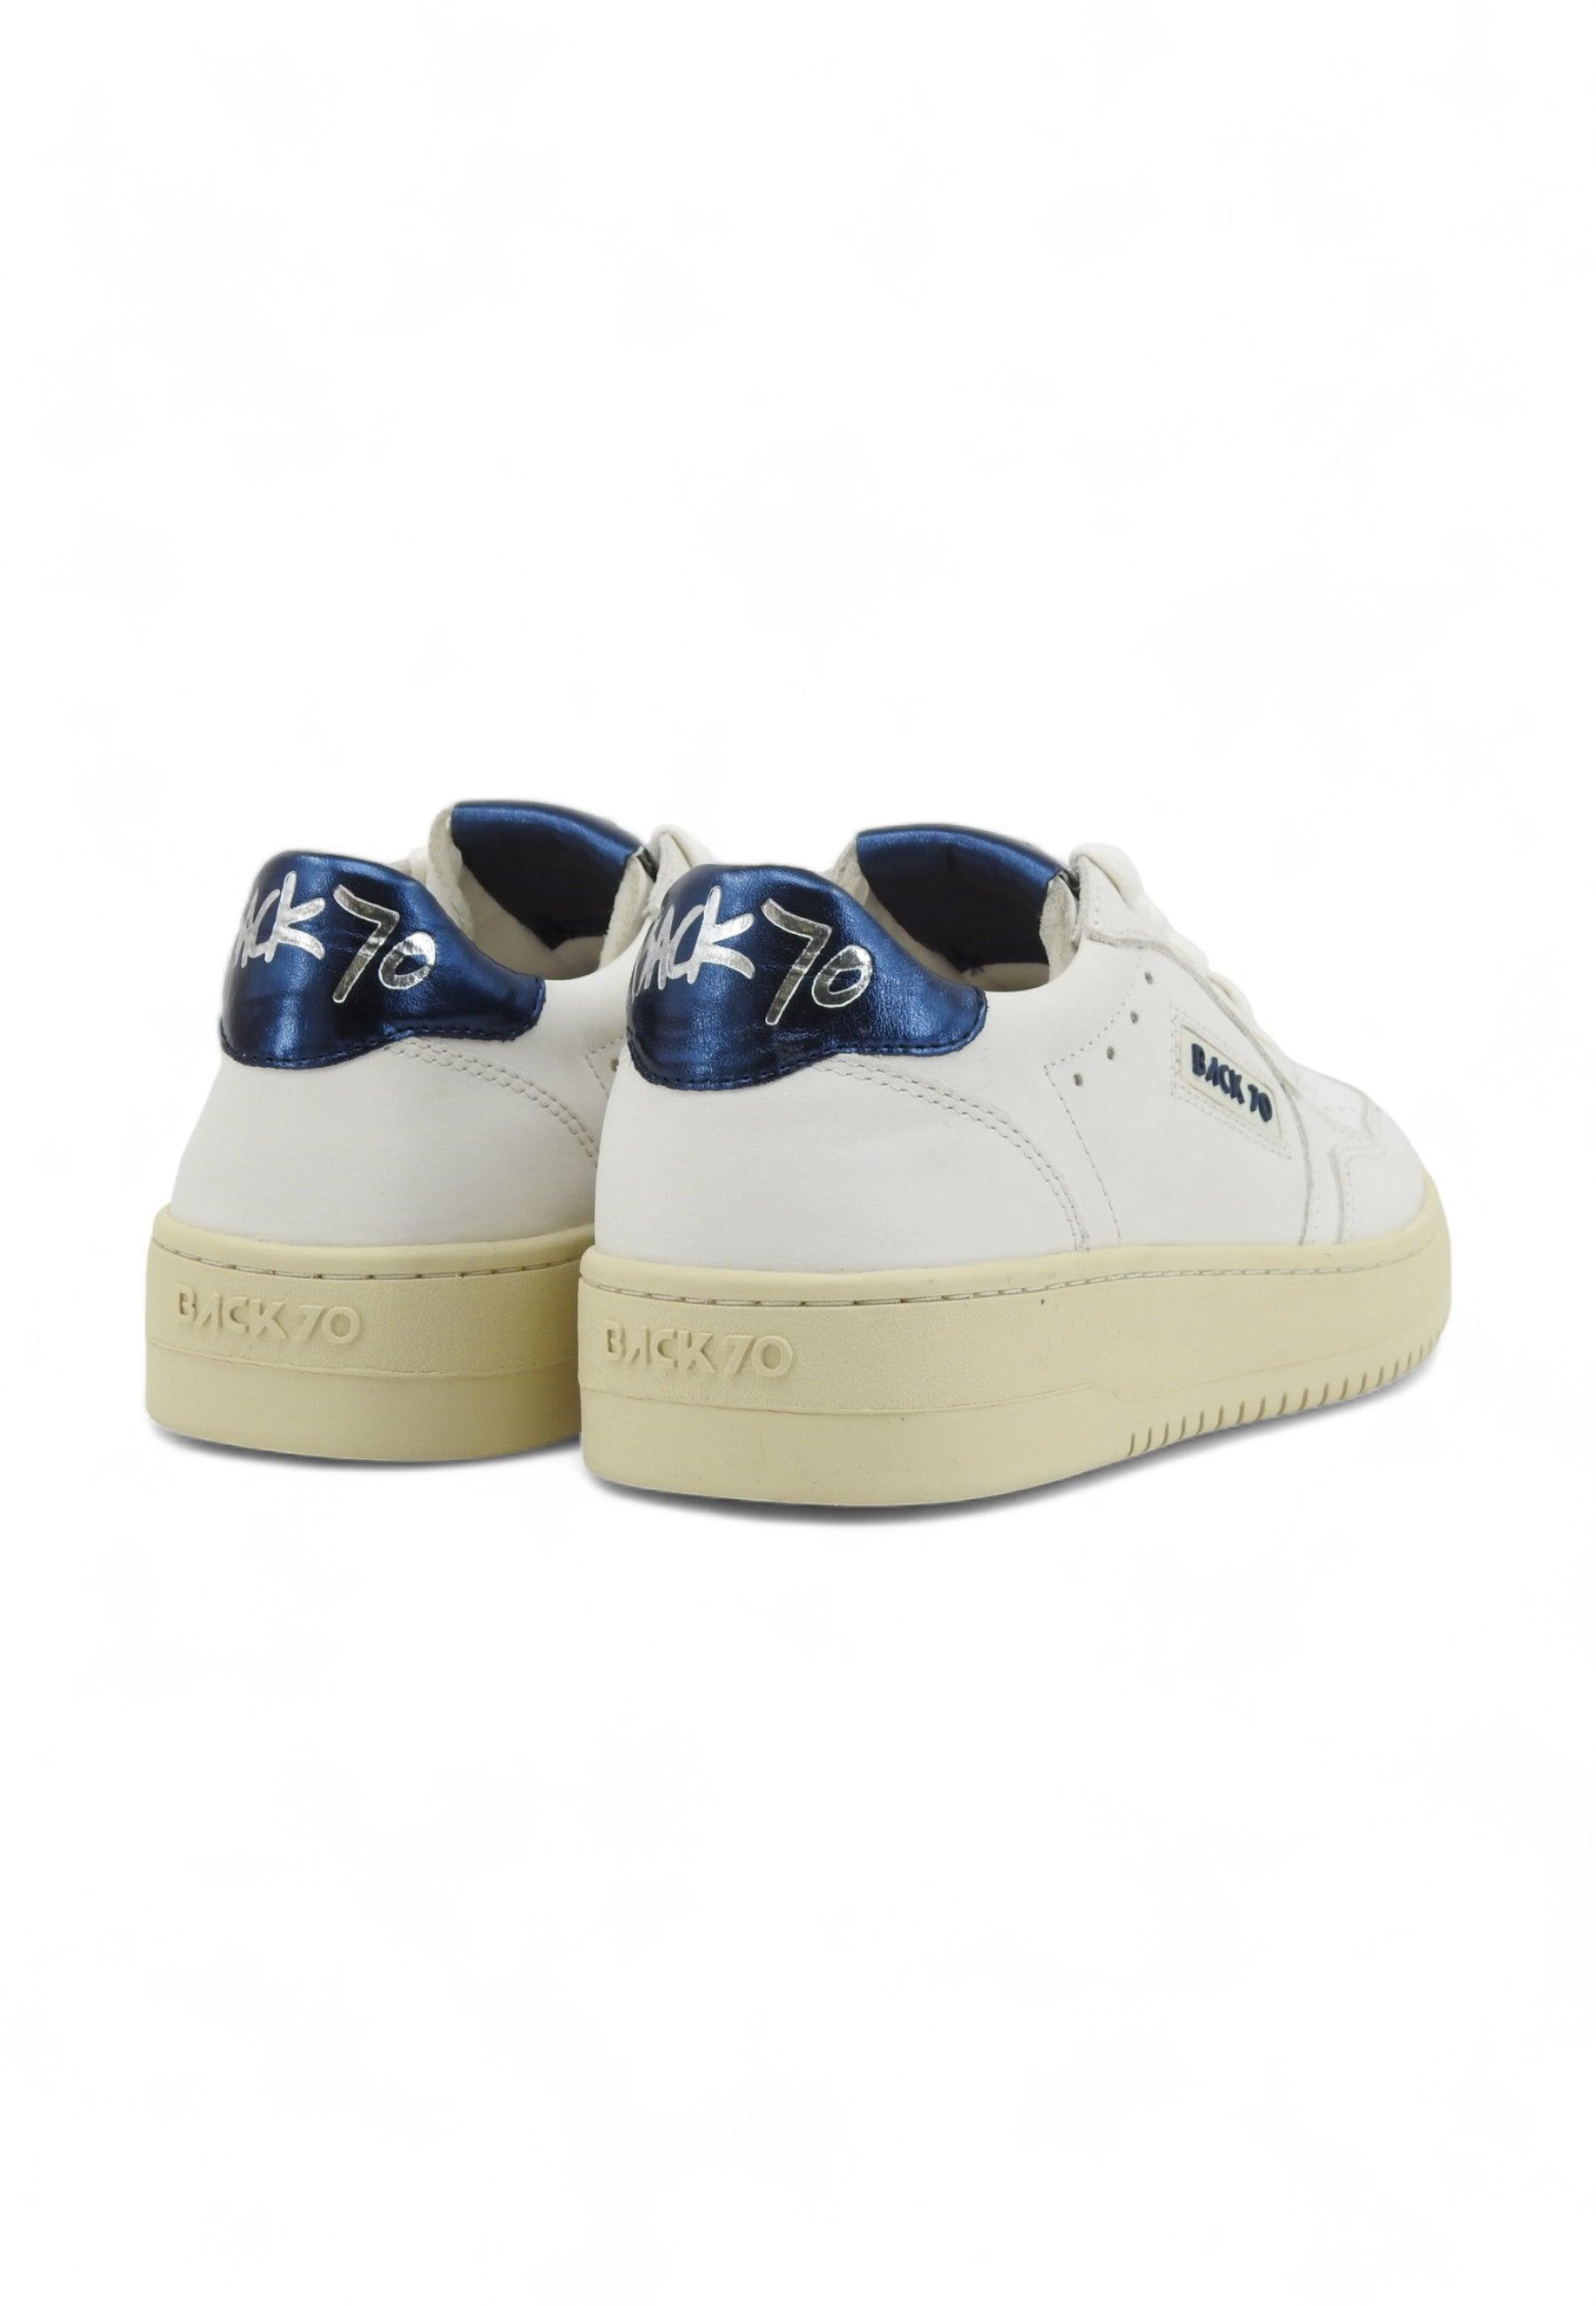 BACK70 Slam B914 Sneaker Donna Navy Bianco 108001-000379 - Sandrini Calzature e Abbigliamento